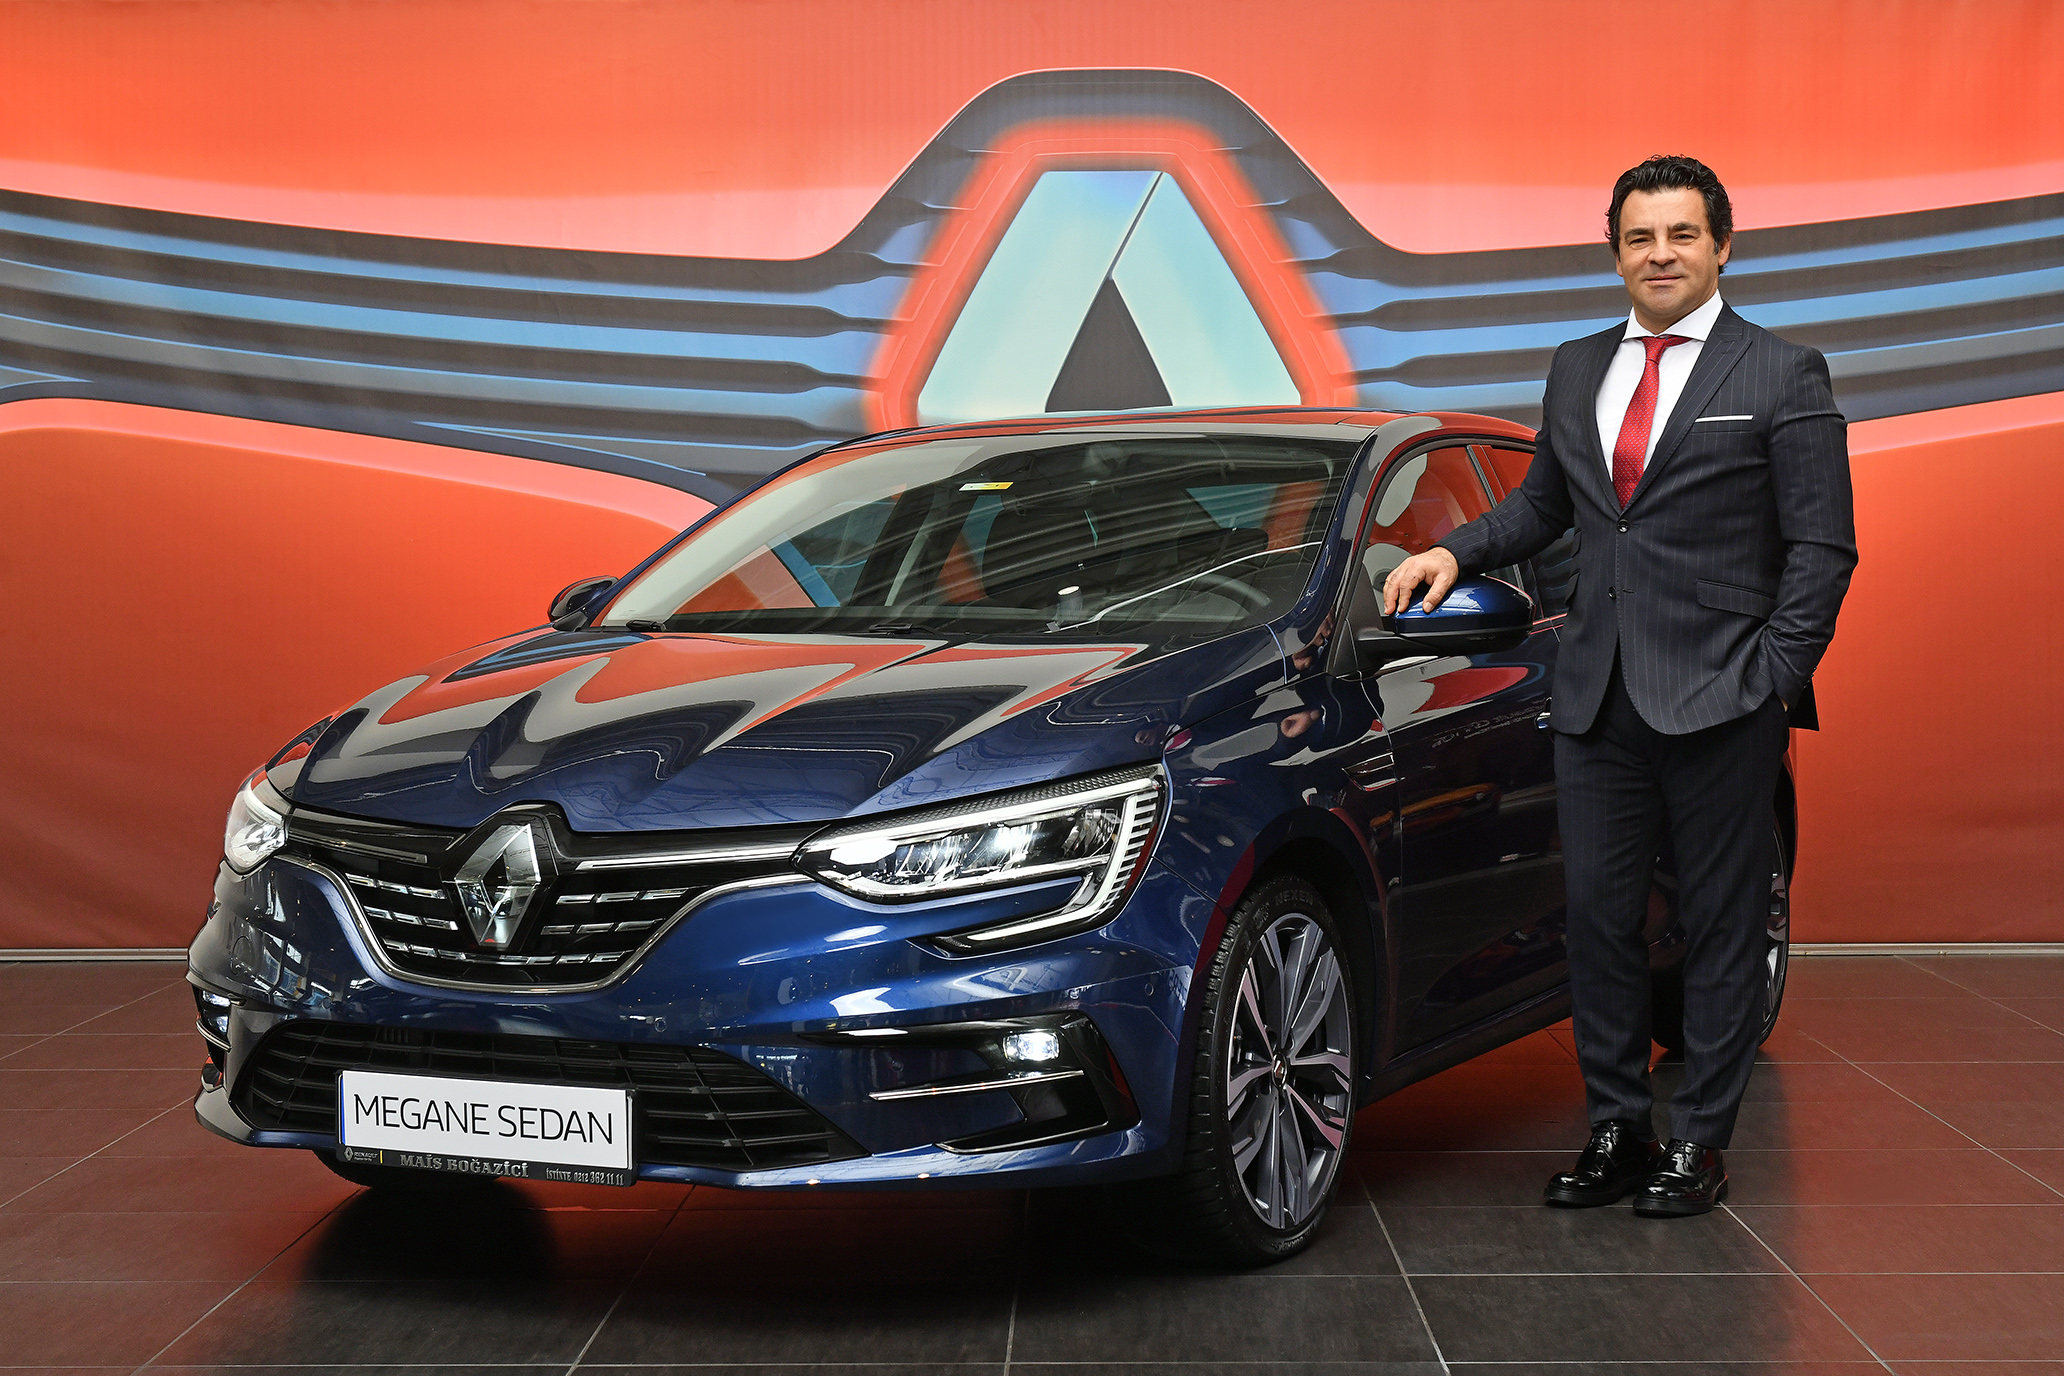 Yenilenen Renault Megane sedan satışa sunuldu!